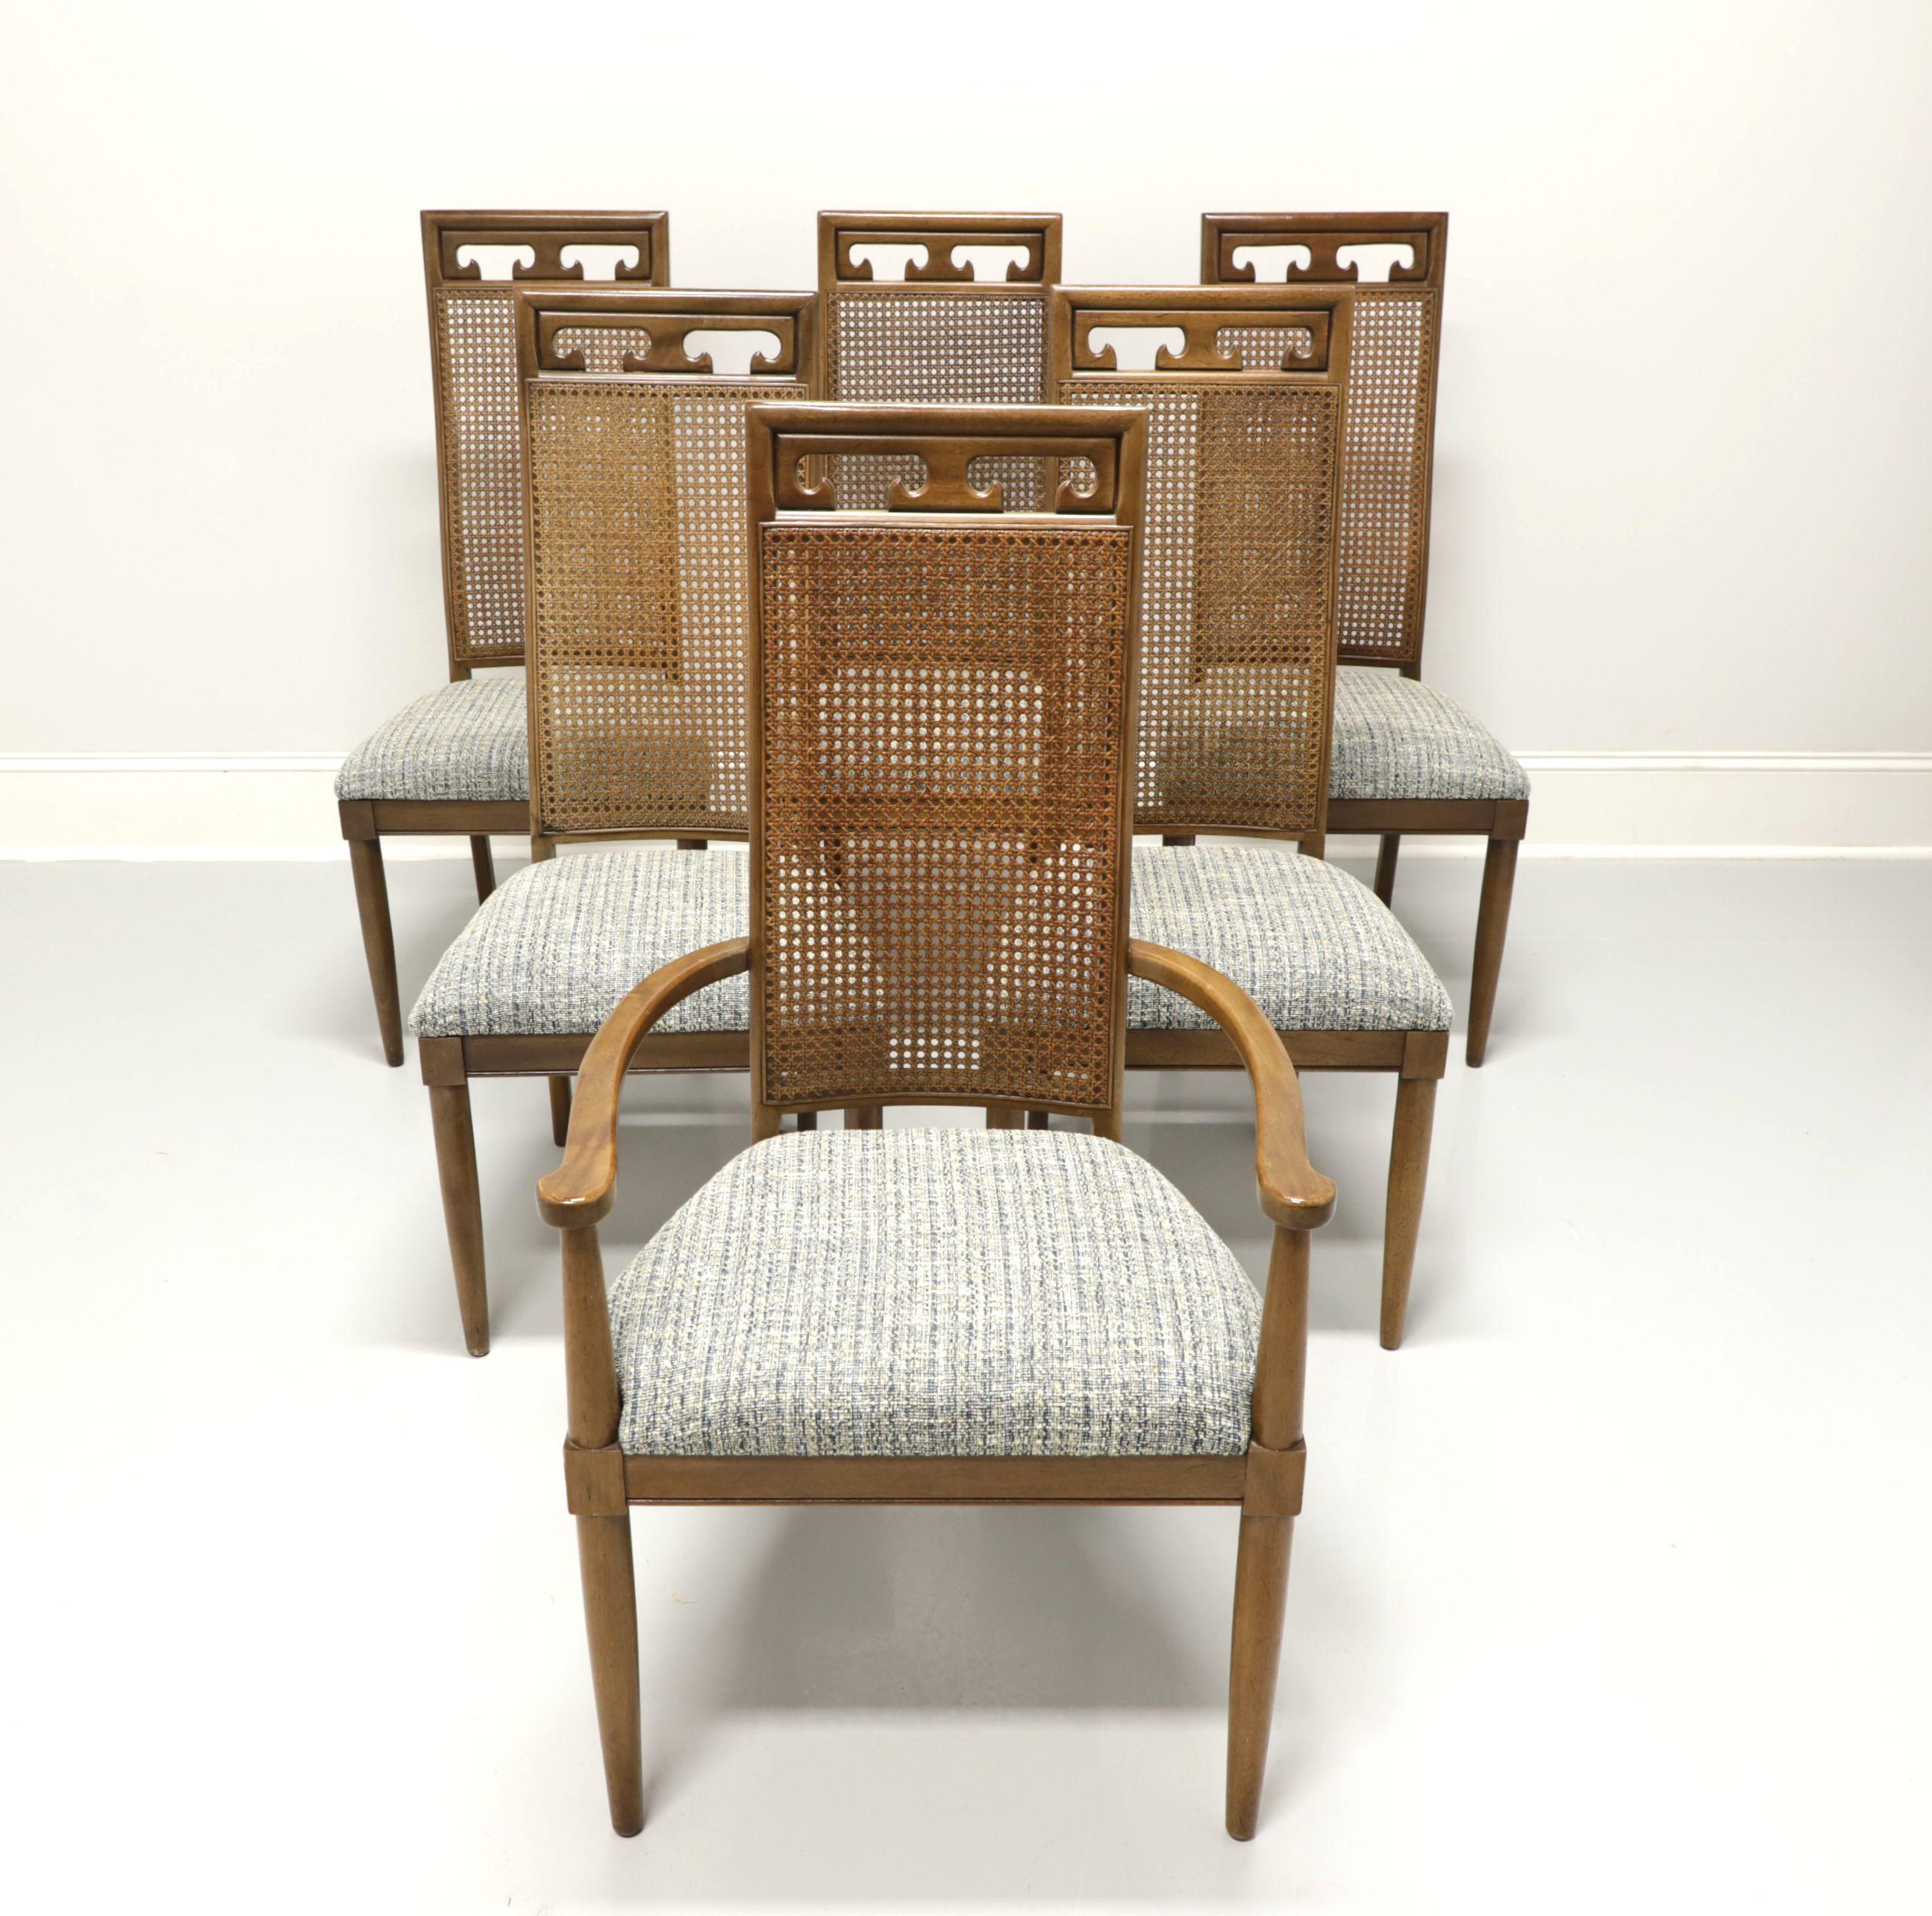 Ein Satz von sechs Esszimmerstühlen im spanischen Stil von Century Furniture. Massives Nussbaumholz, geschnitzte Kammleiste, hohe Rohrrückenlehnen, blau und grau gepolsterte Sitze, runde, konische Vorderbeine und quadratische Hinterbeine. Das Set